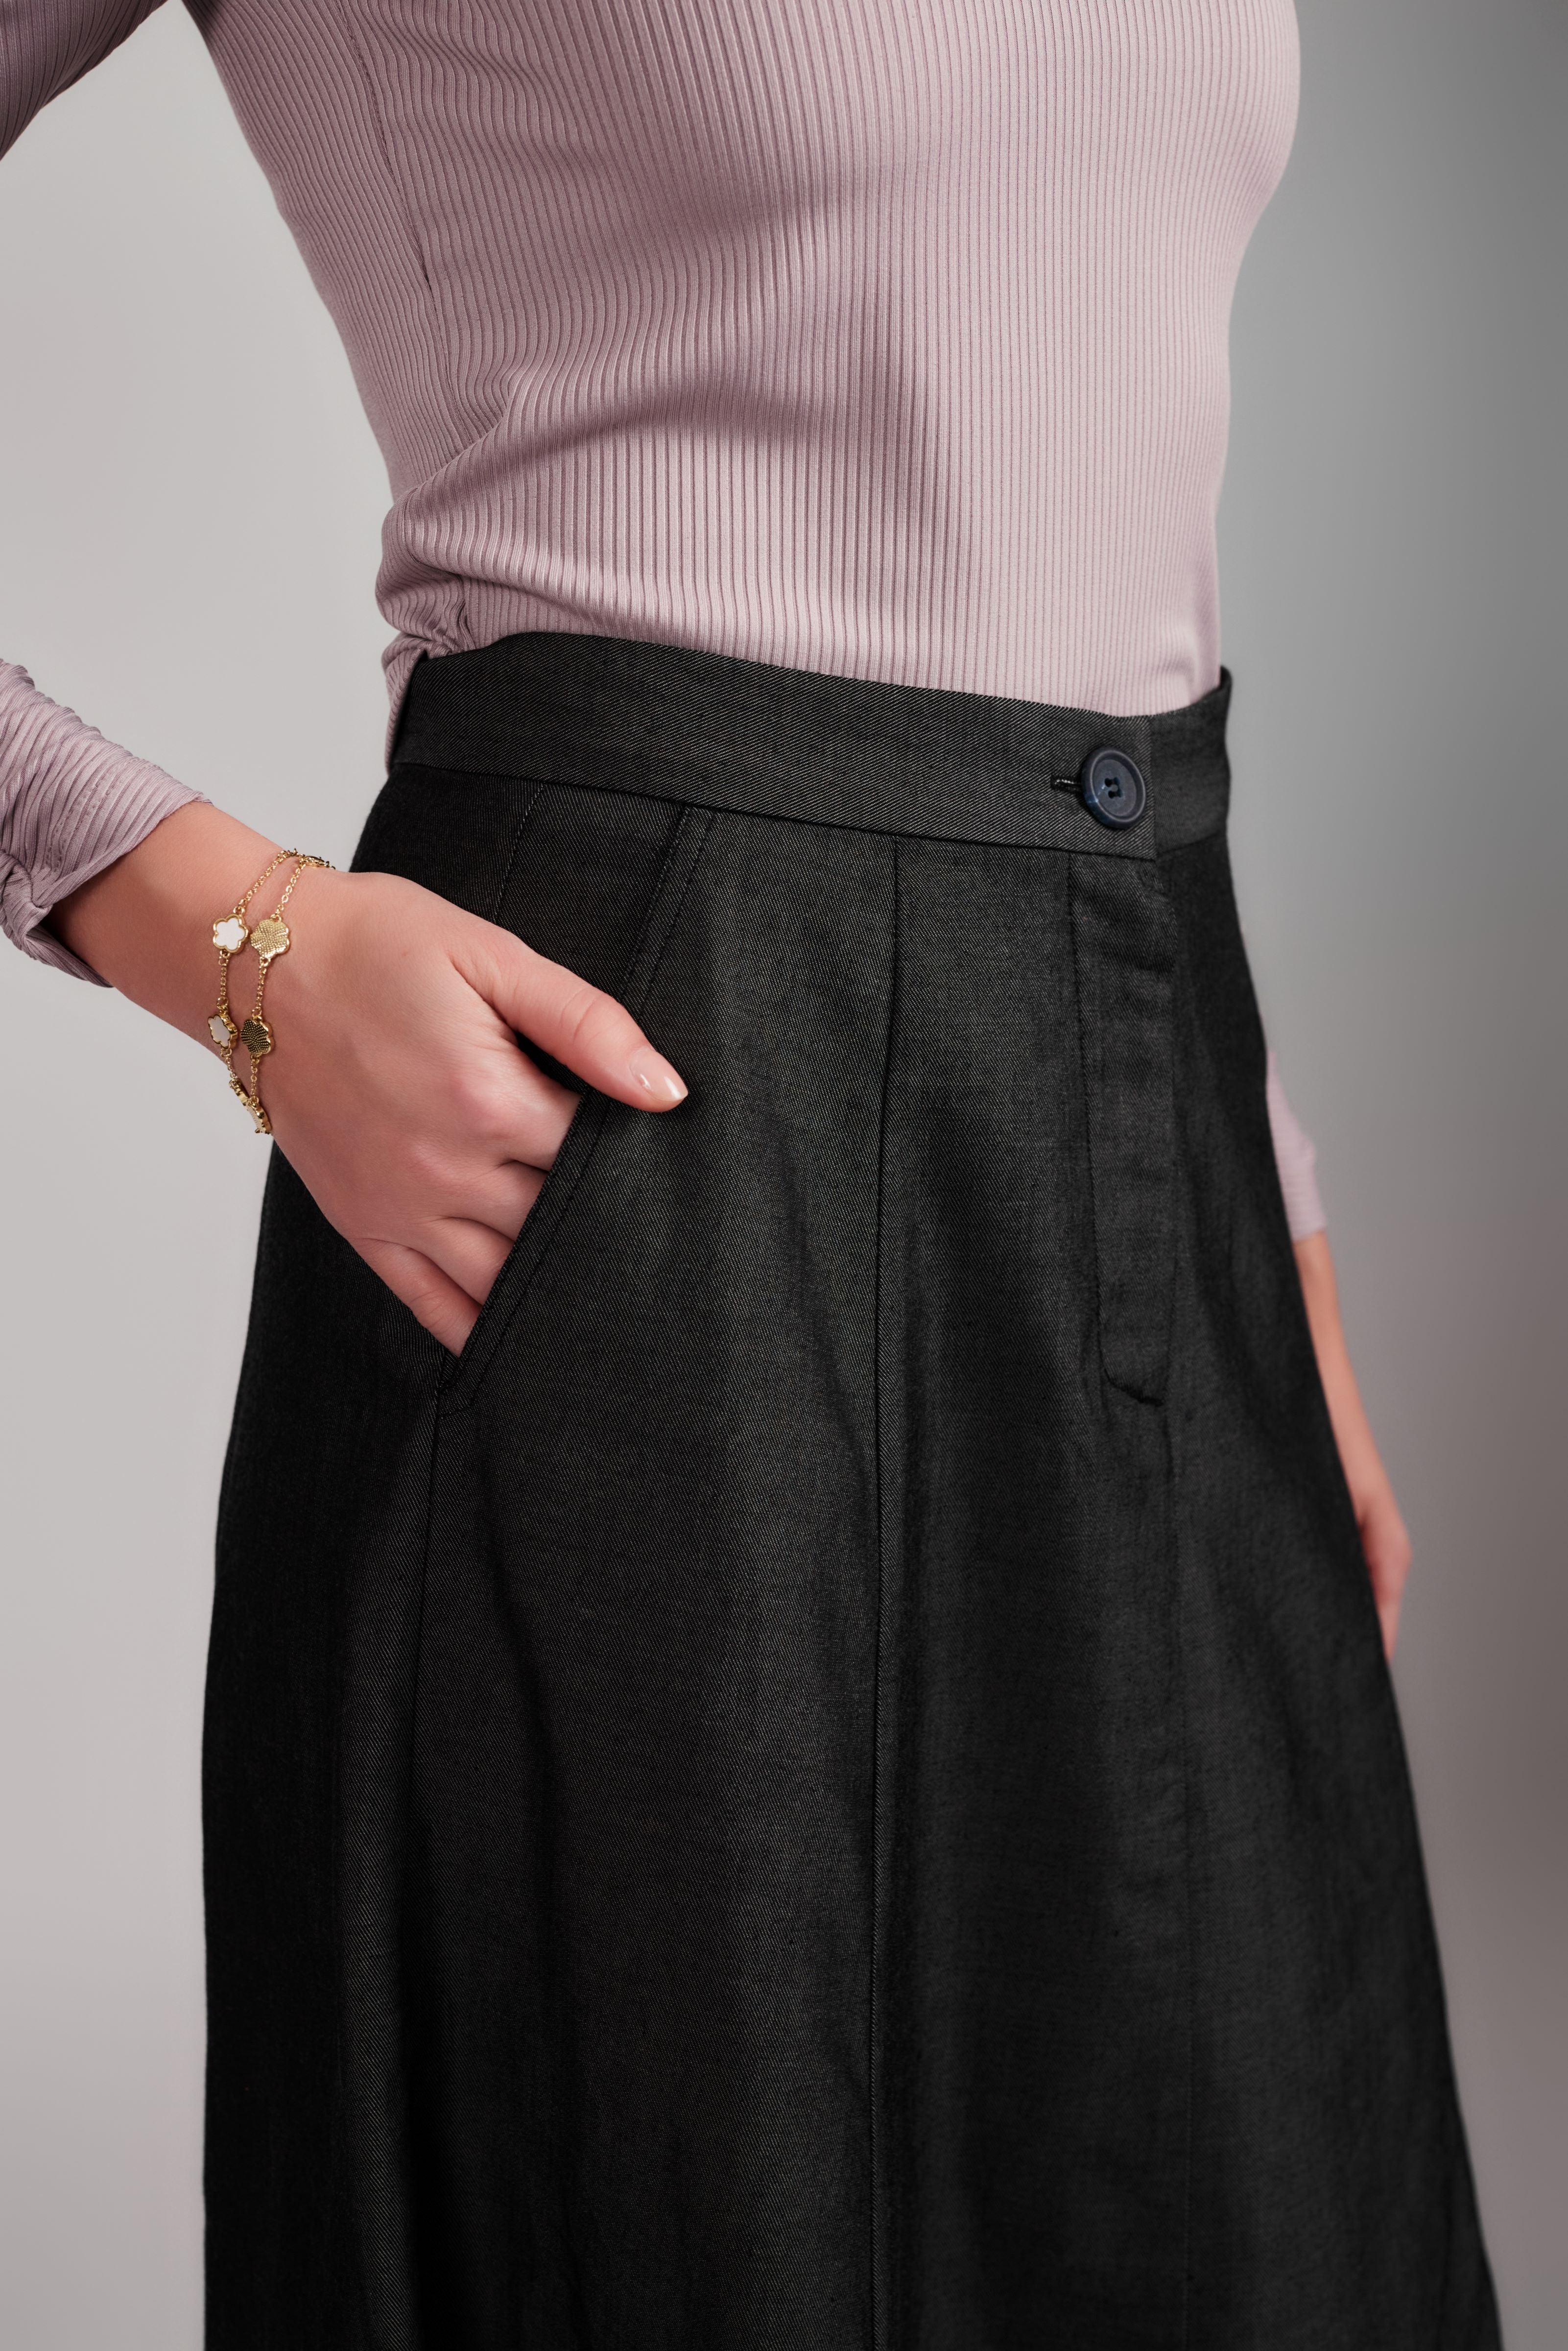 Twill Maxi Skirt - Charcoal - Olivvi World